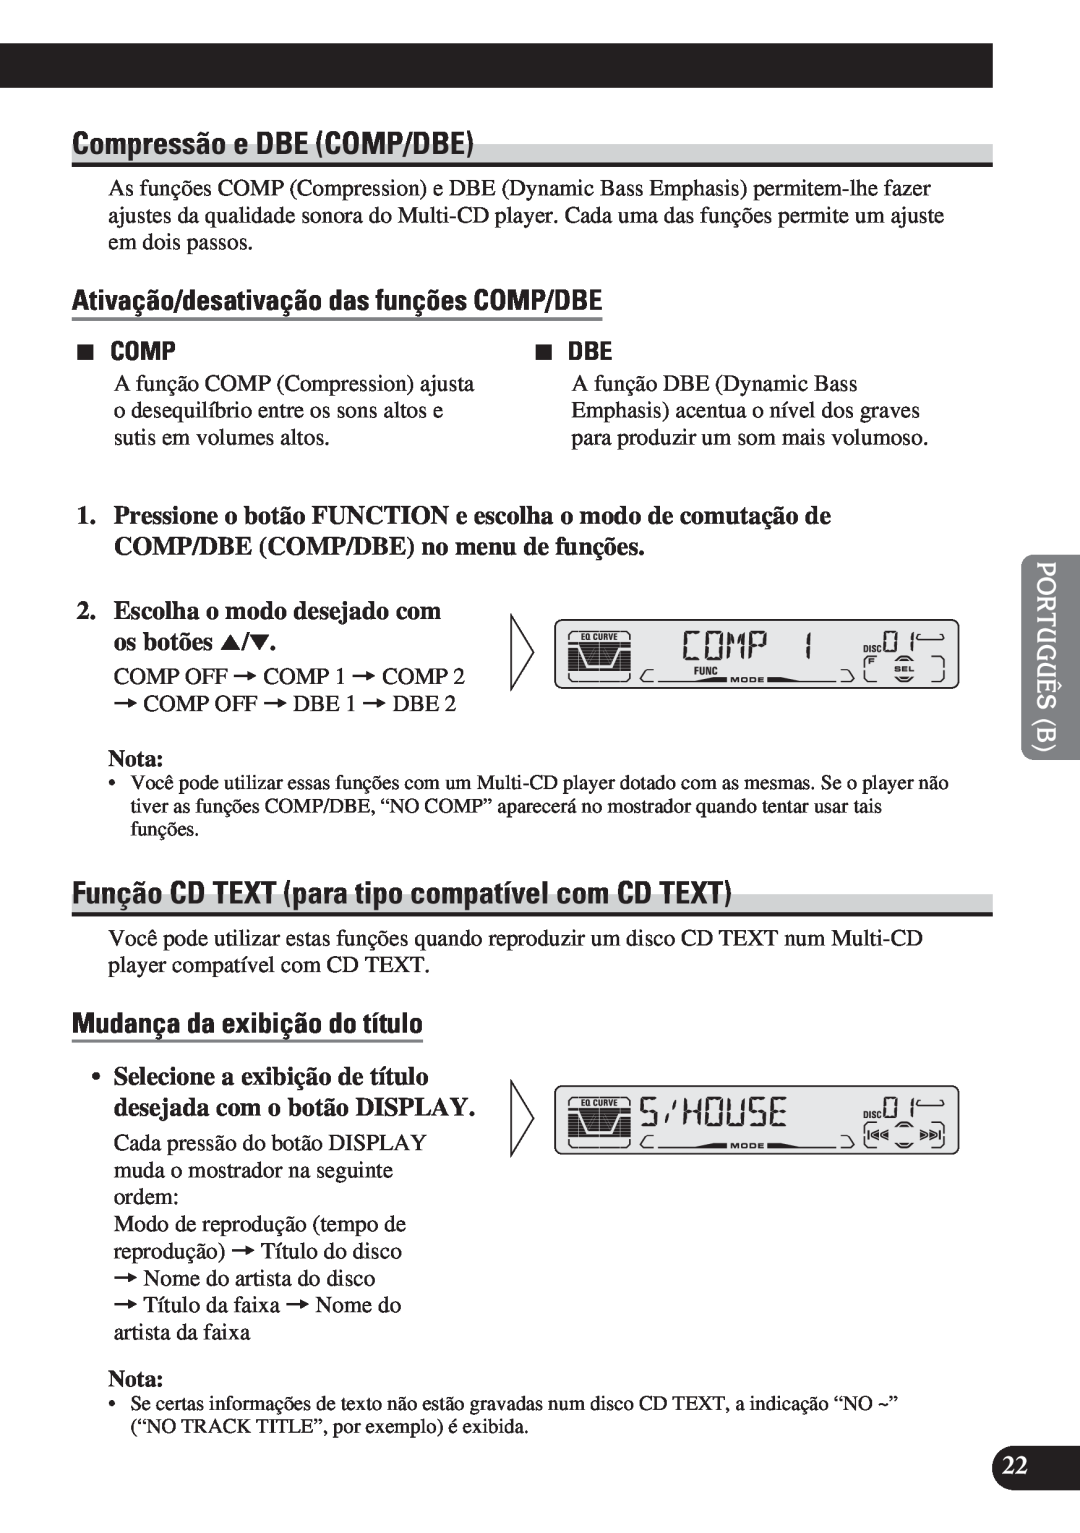 Pioneer DEH-P3150 operation manual Compressão e DBE COMP/DBE, Função CD TEXT para tipo compatível com CD TEXT, 2299, 7 DBE 